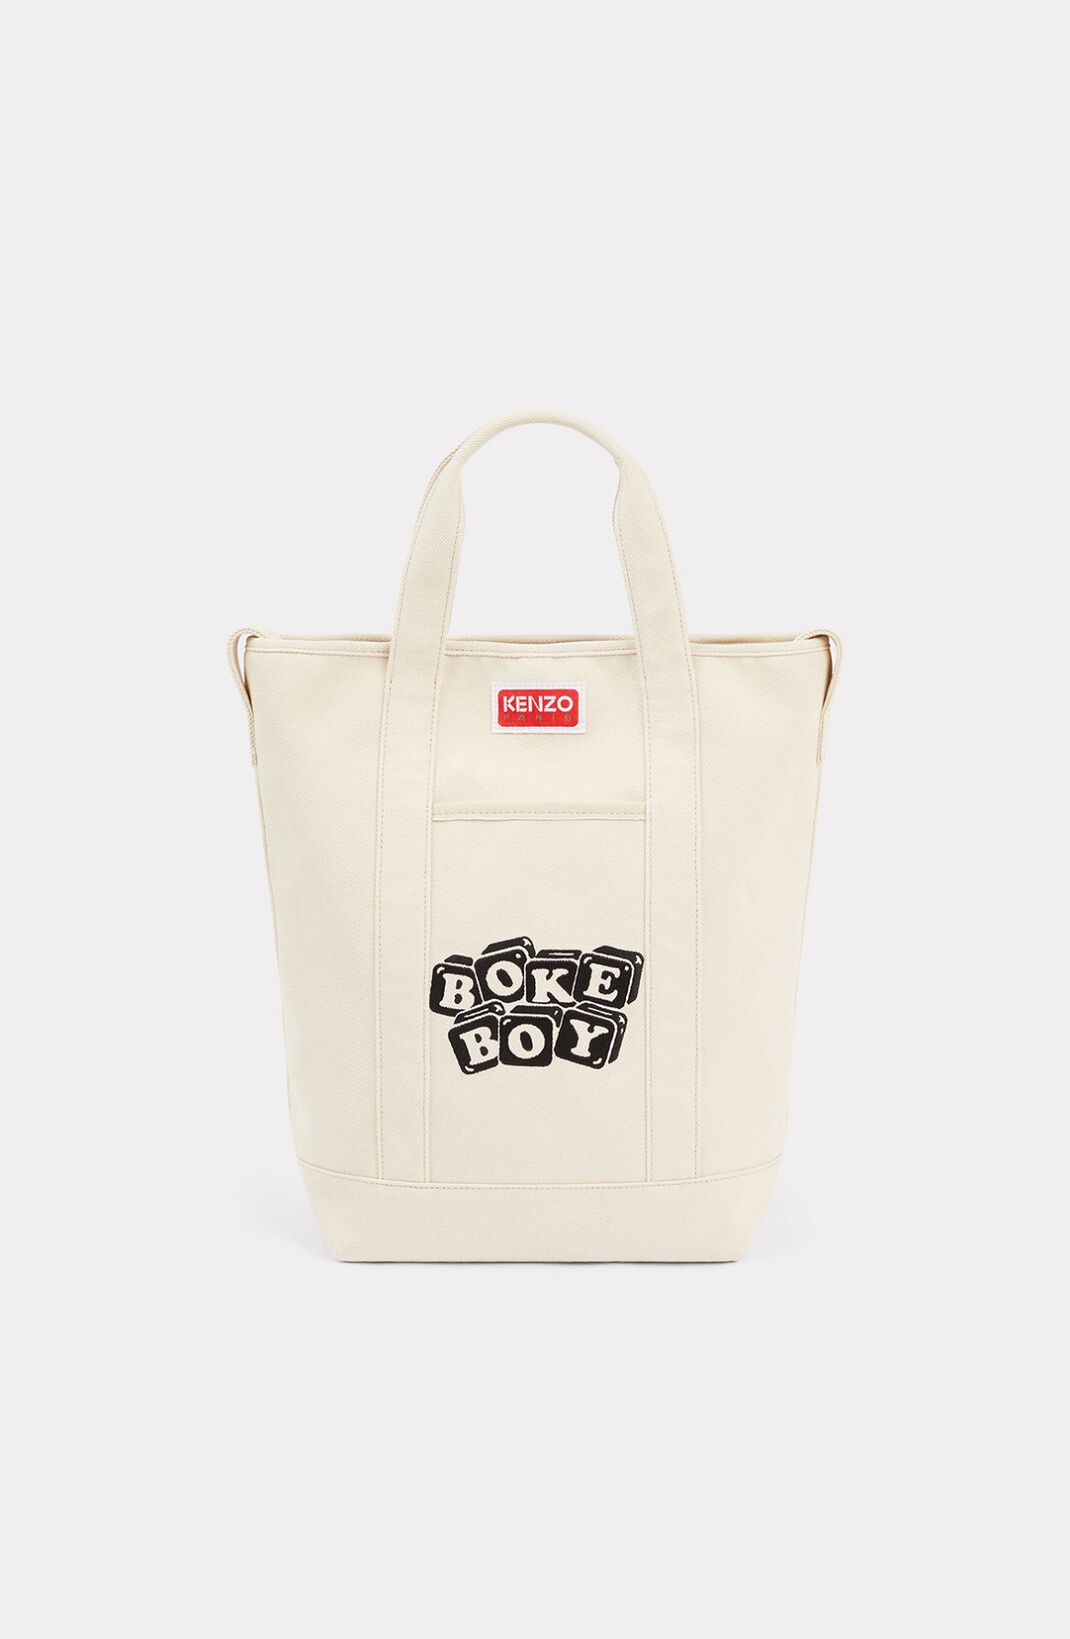 'BOKE Boy' tote shoulder bag - 2